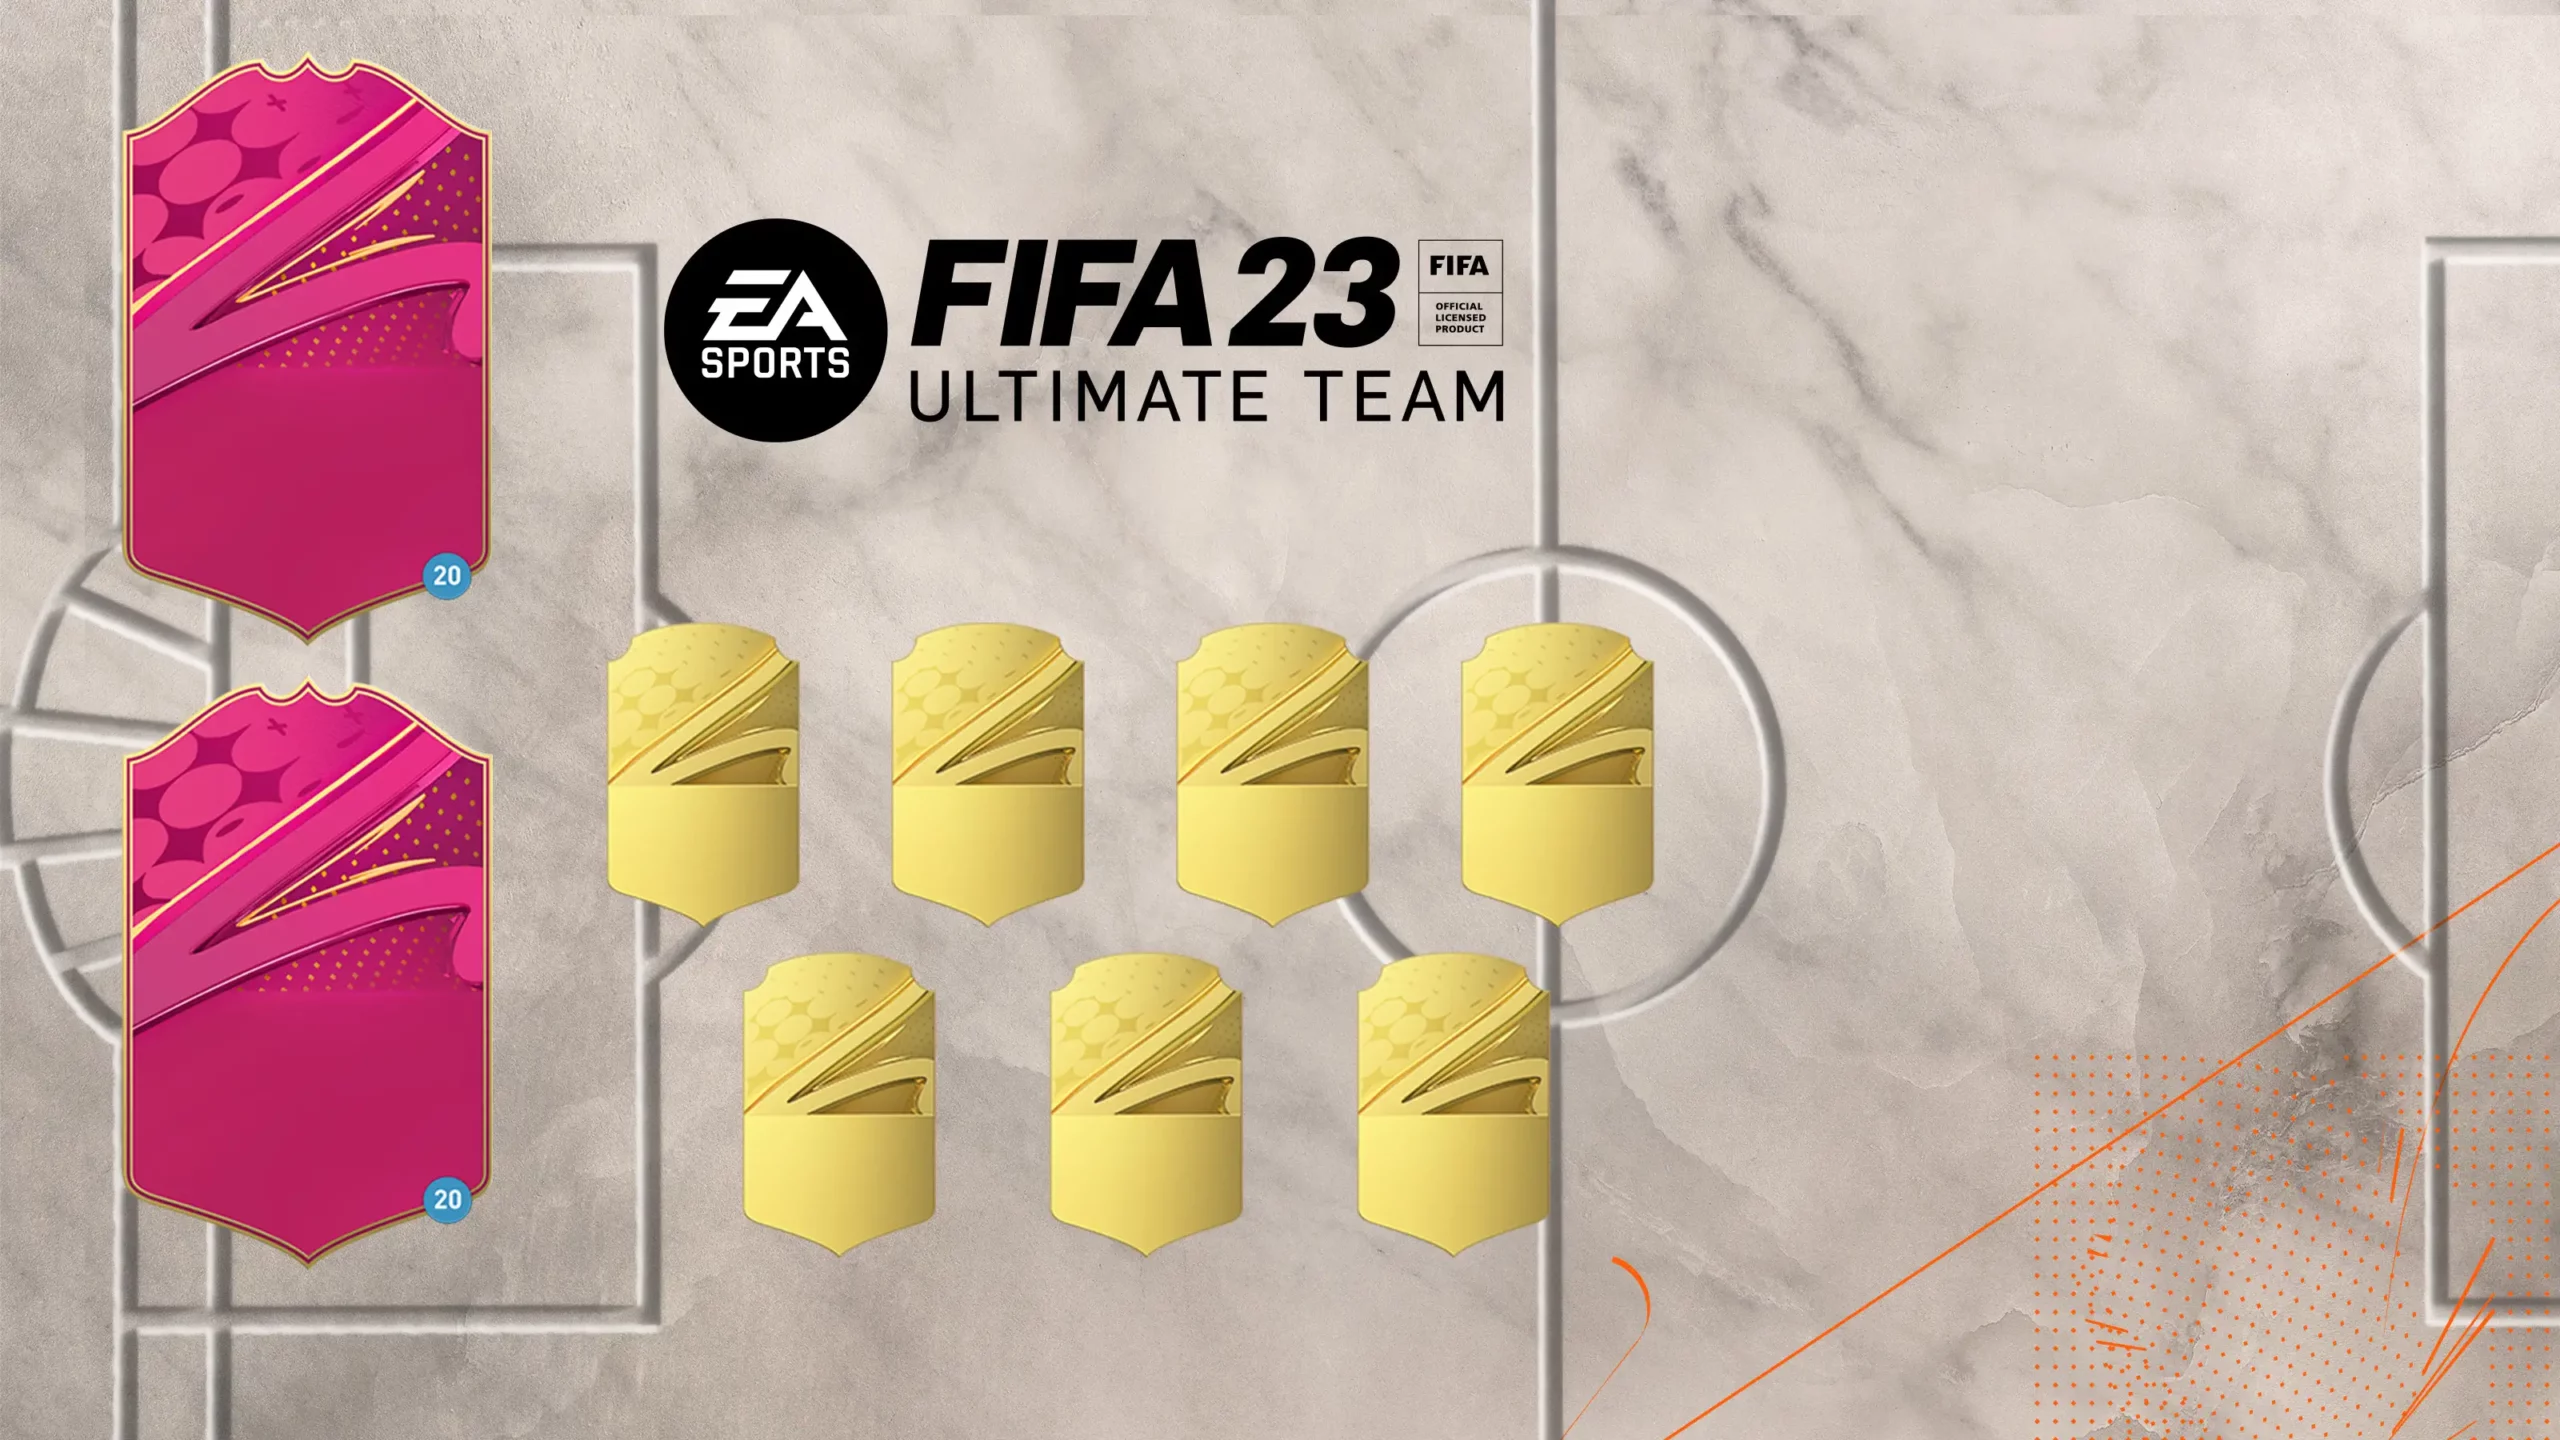 FIFA 22: So könnt ihr Verbrauchsobjekte verkaufen